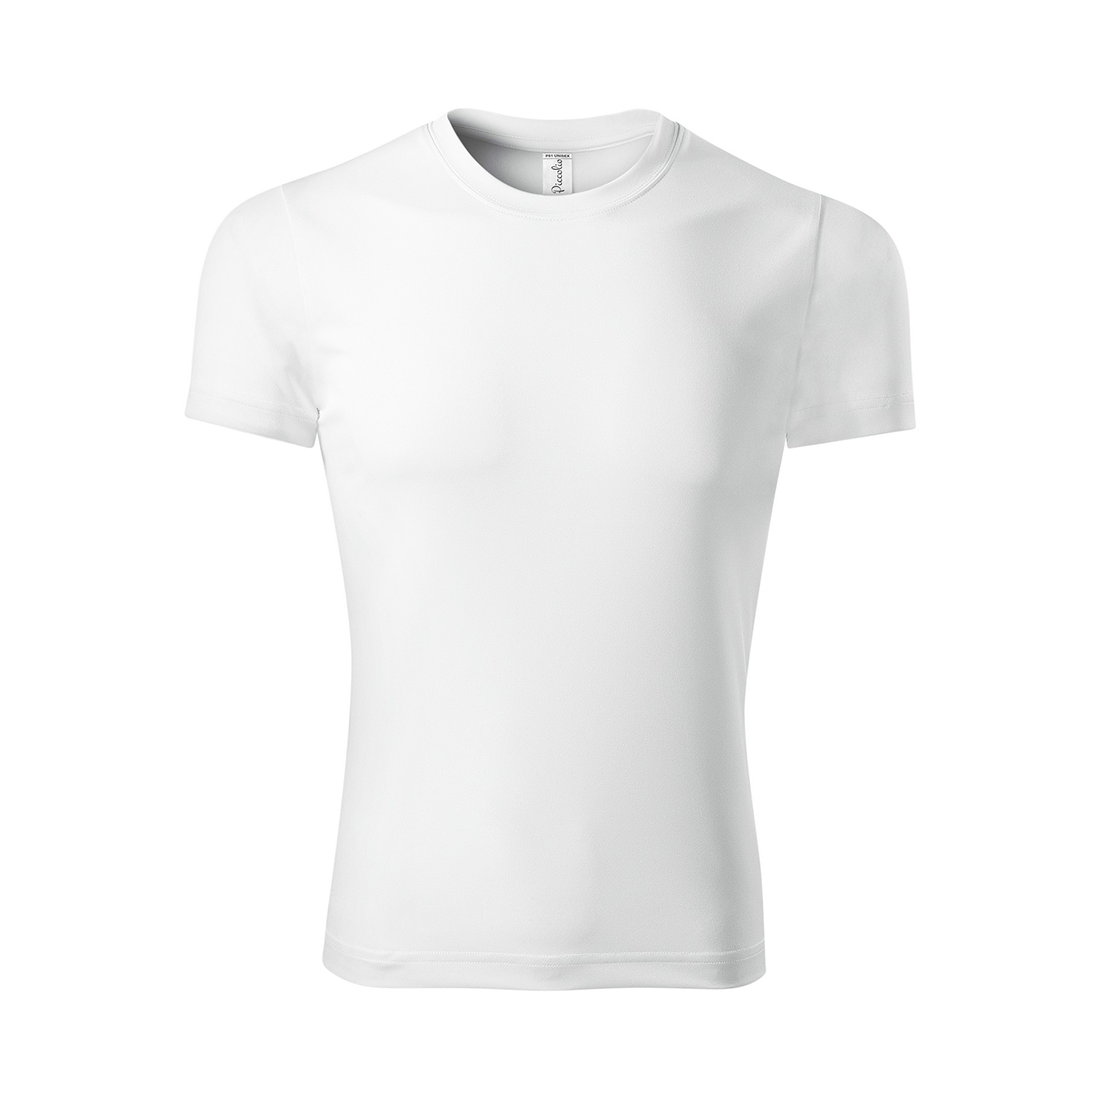 PIXEL Unisex T-shirt - Safetywear